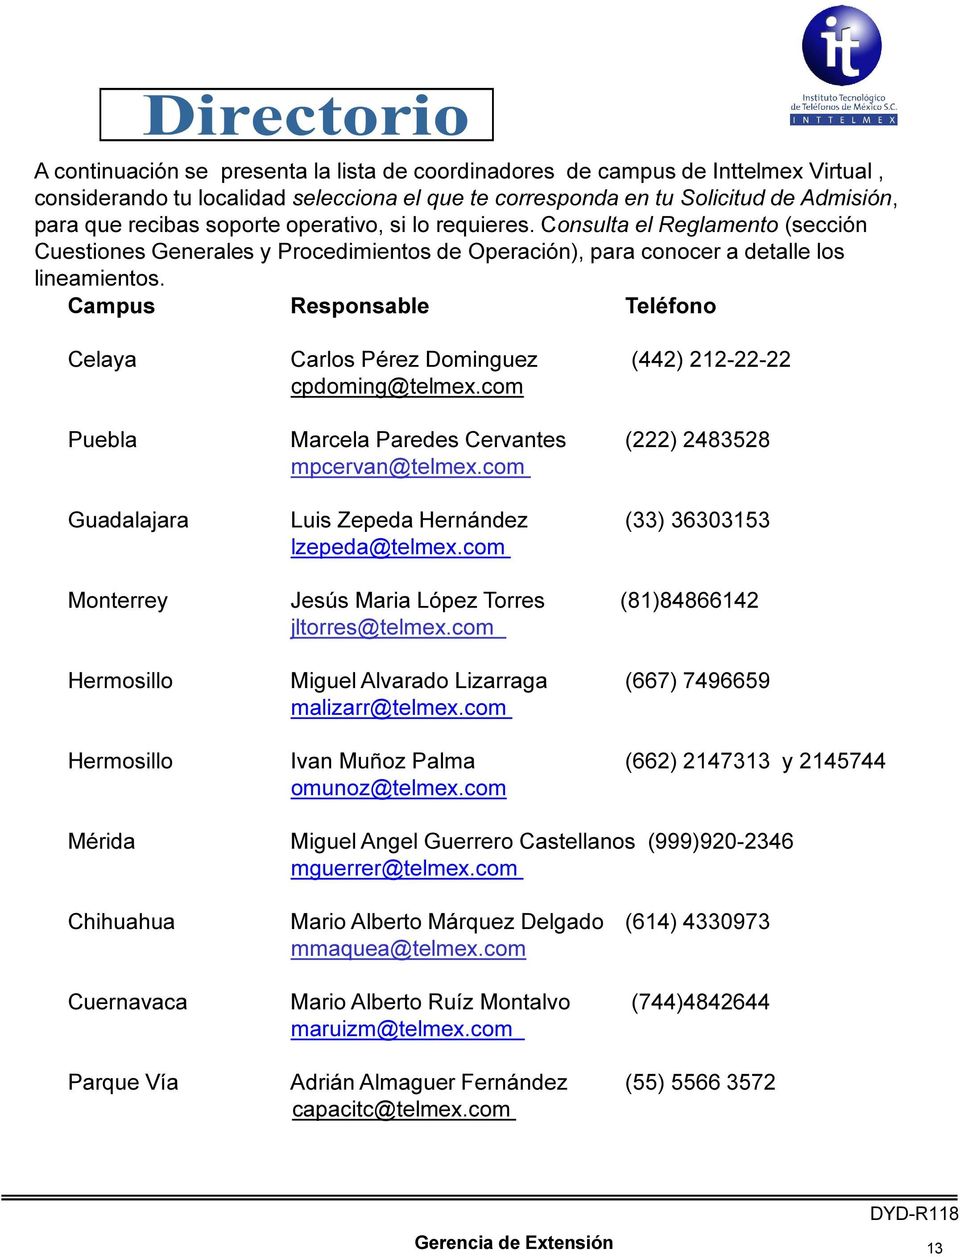 Campus Responsable Teléfono Celaya Carlos Pérez Dominguez (442) 212-22-22 cpdoming@telmex.com Puebla Marcela Paredes Cervantes (222) 2483528 mpcervan@telmex.